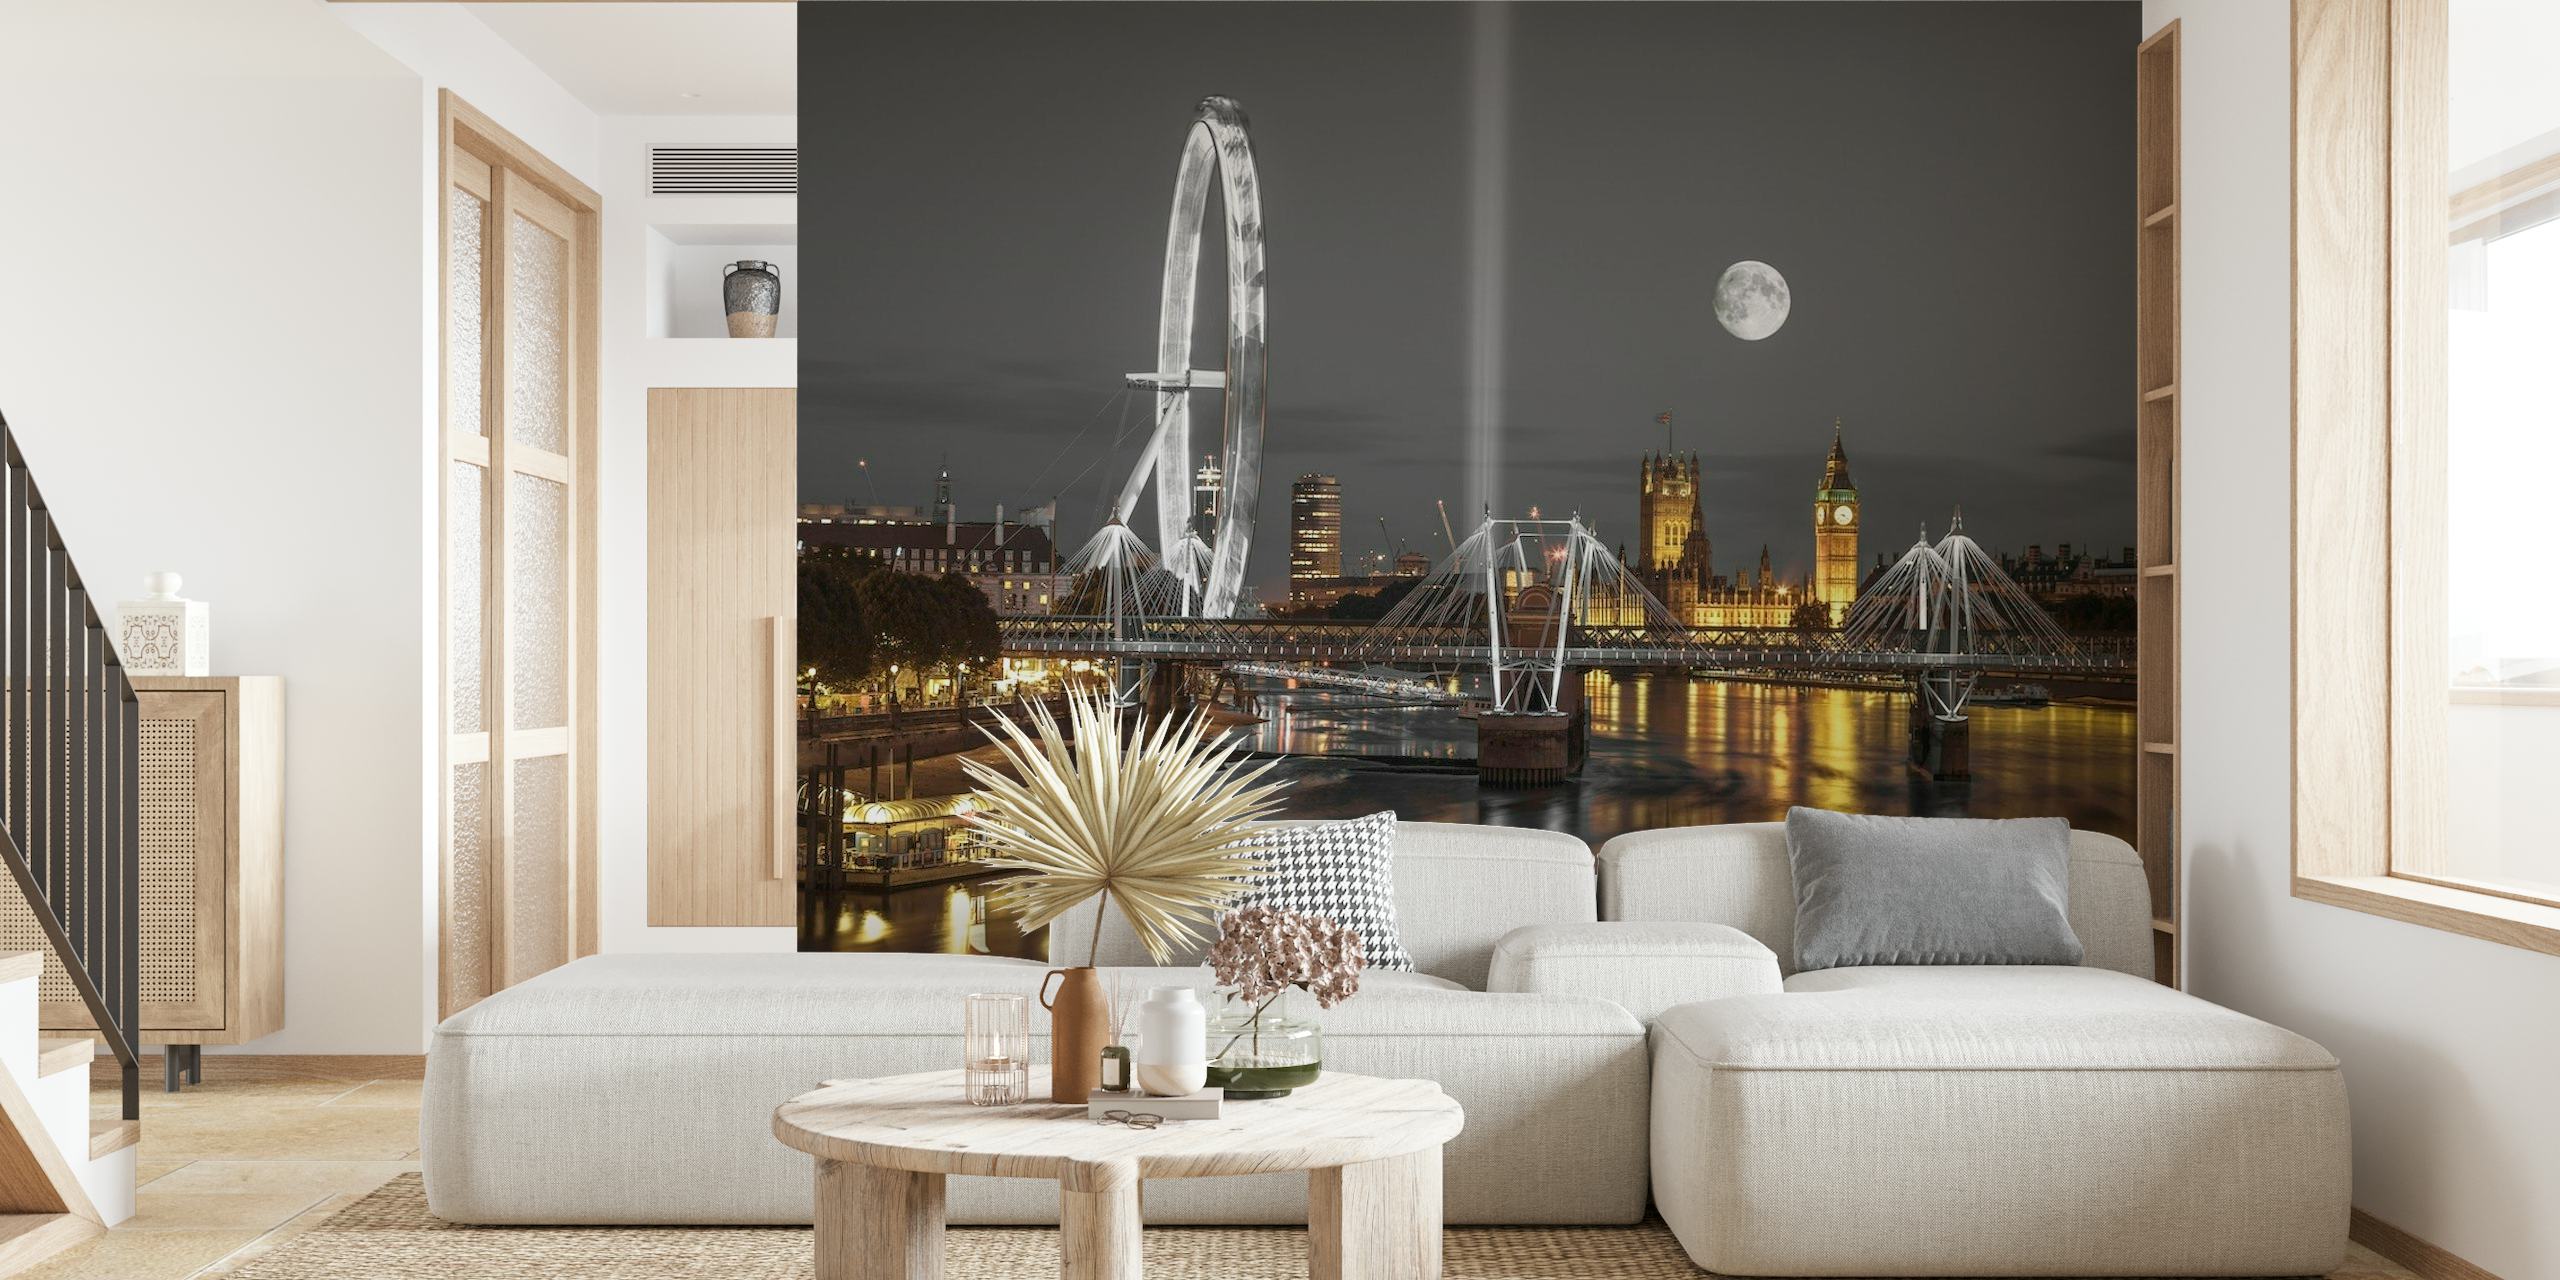 Fototapete mit britischen Wahrzeichen mit London Eye und Palace of Westminster unter einem mondbeschienenen Himmel